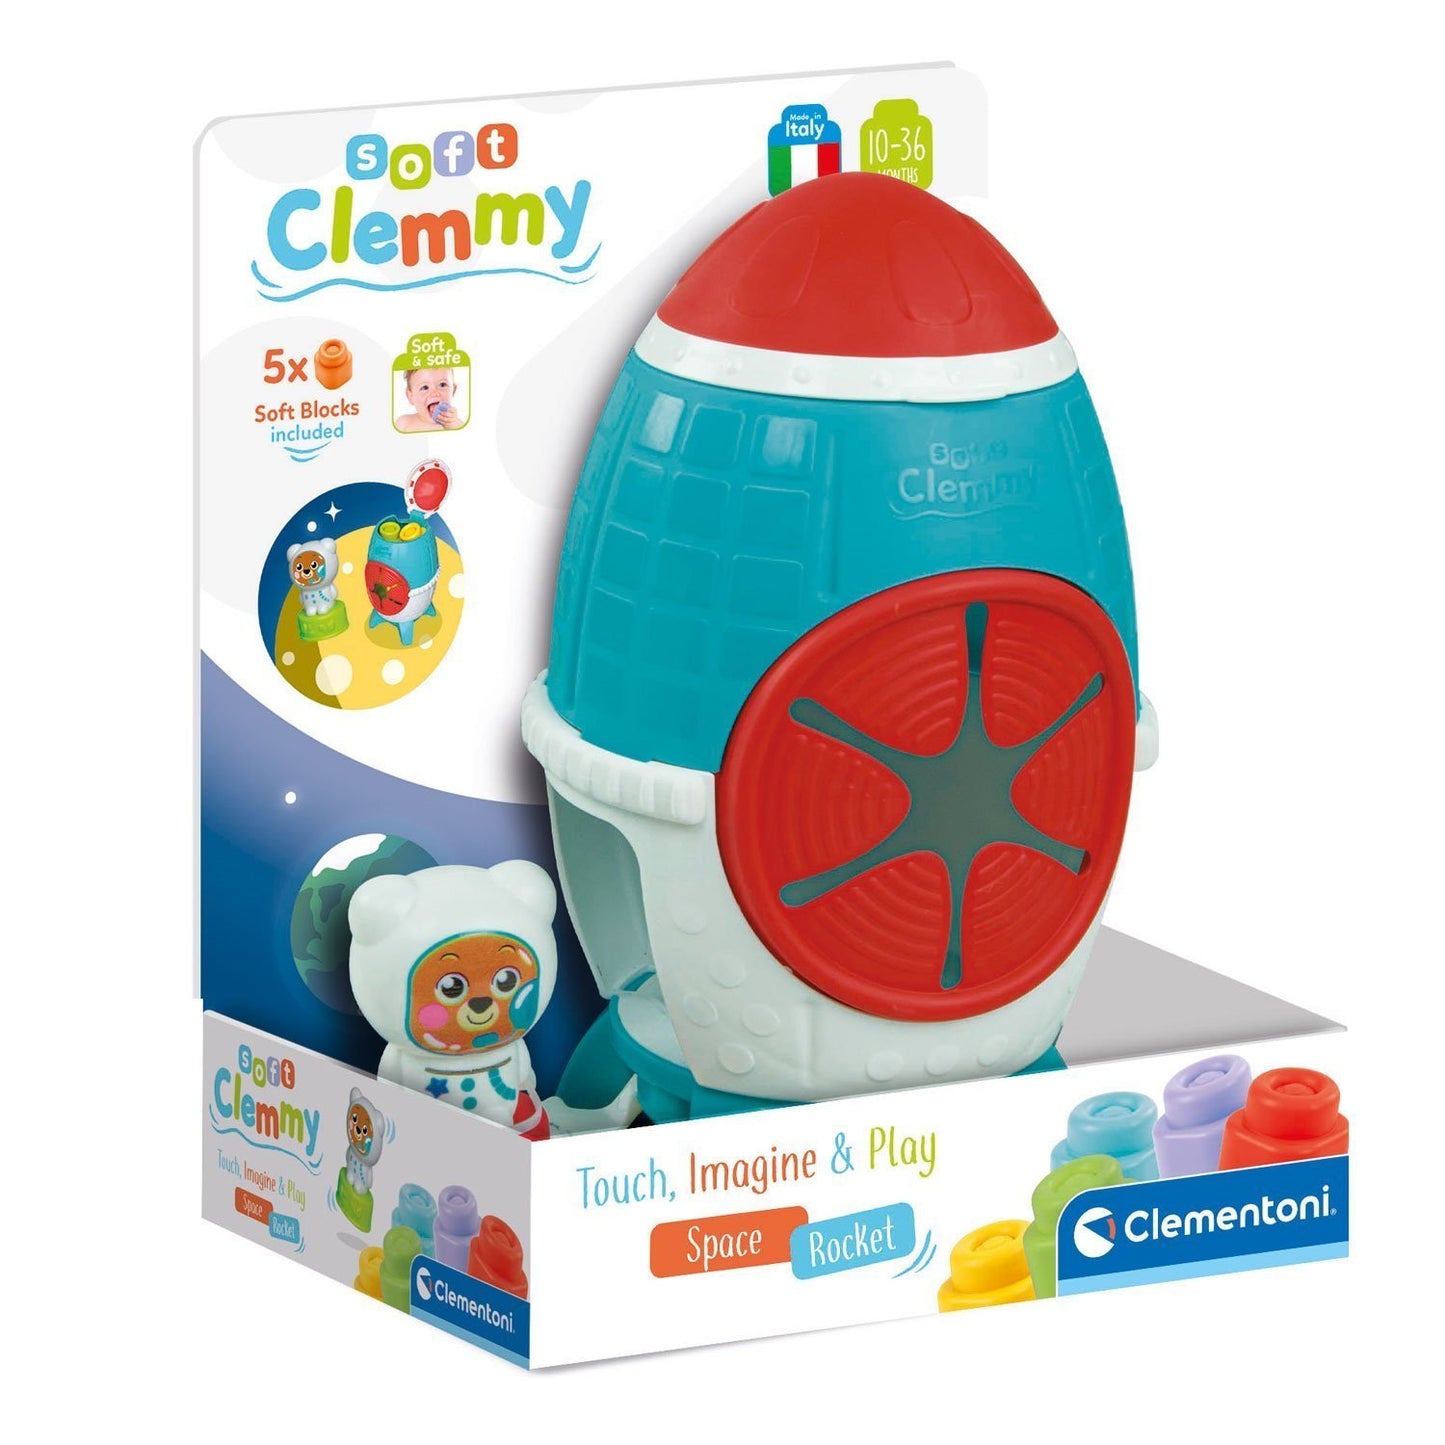 Baby Clementoni Clemmy Sensory Rocket